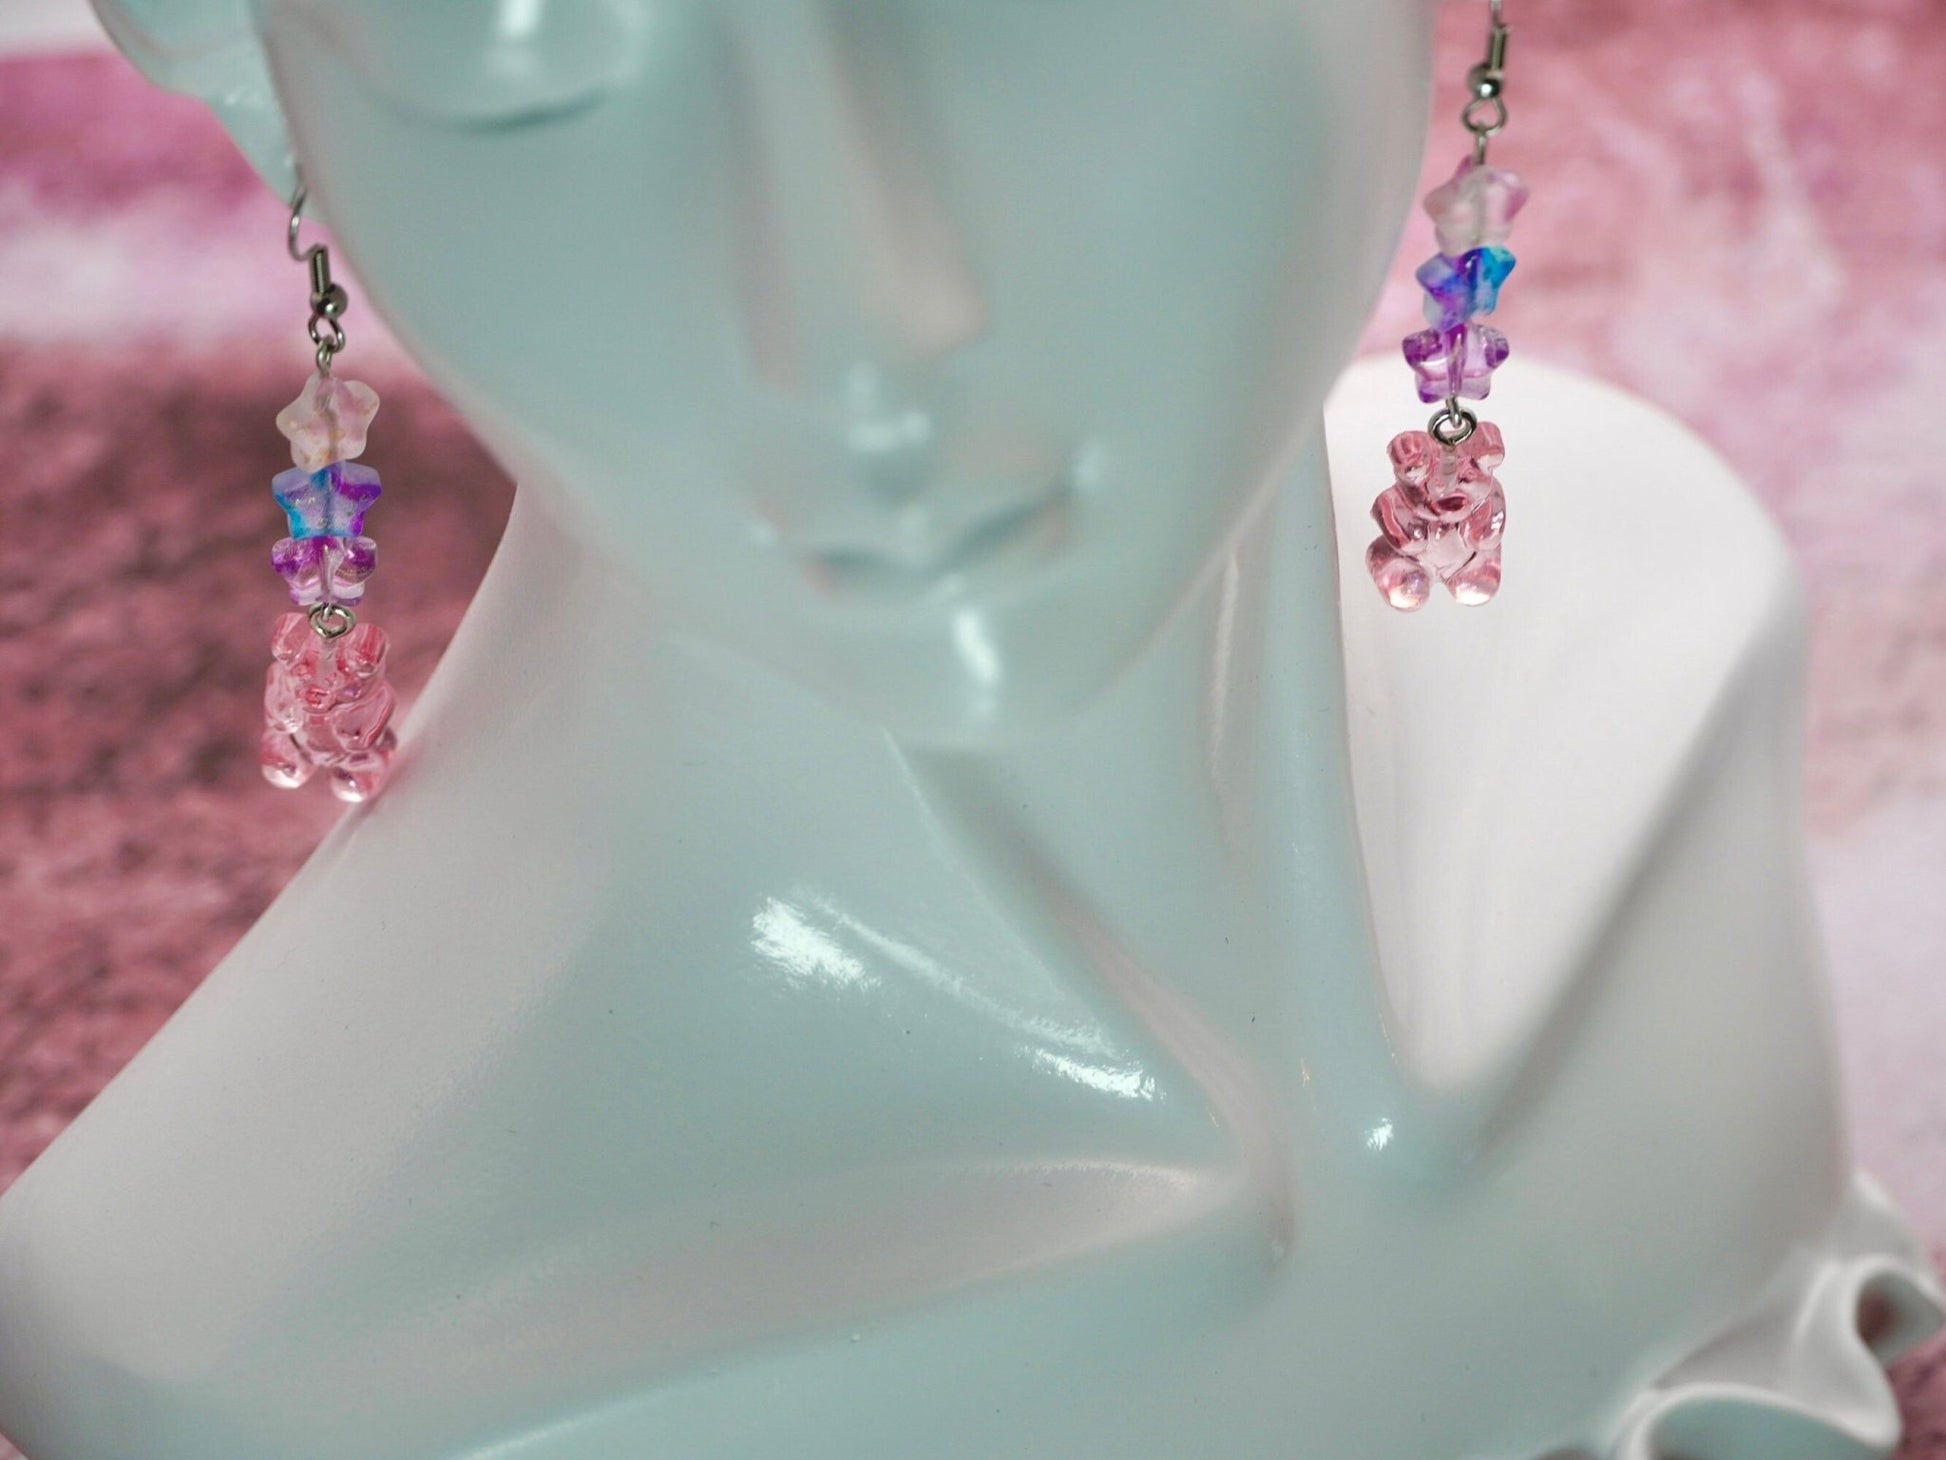 Pink Gummy Bear Earrings with Czech Glass Beads, Elegant Spring Fashion Earrings - Dekowaii Jewelry Company